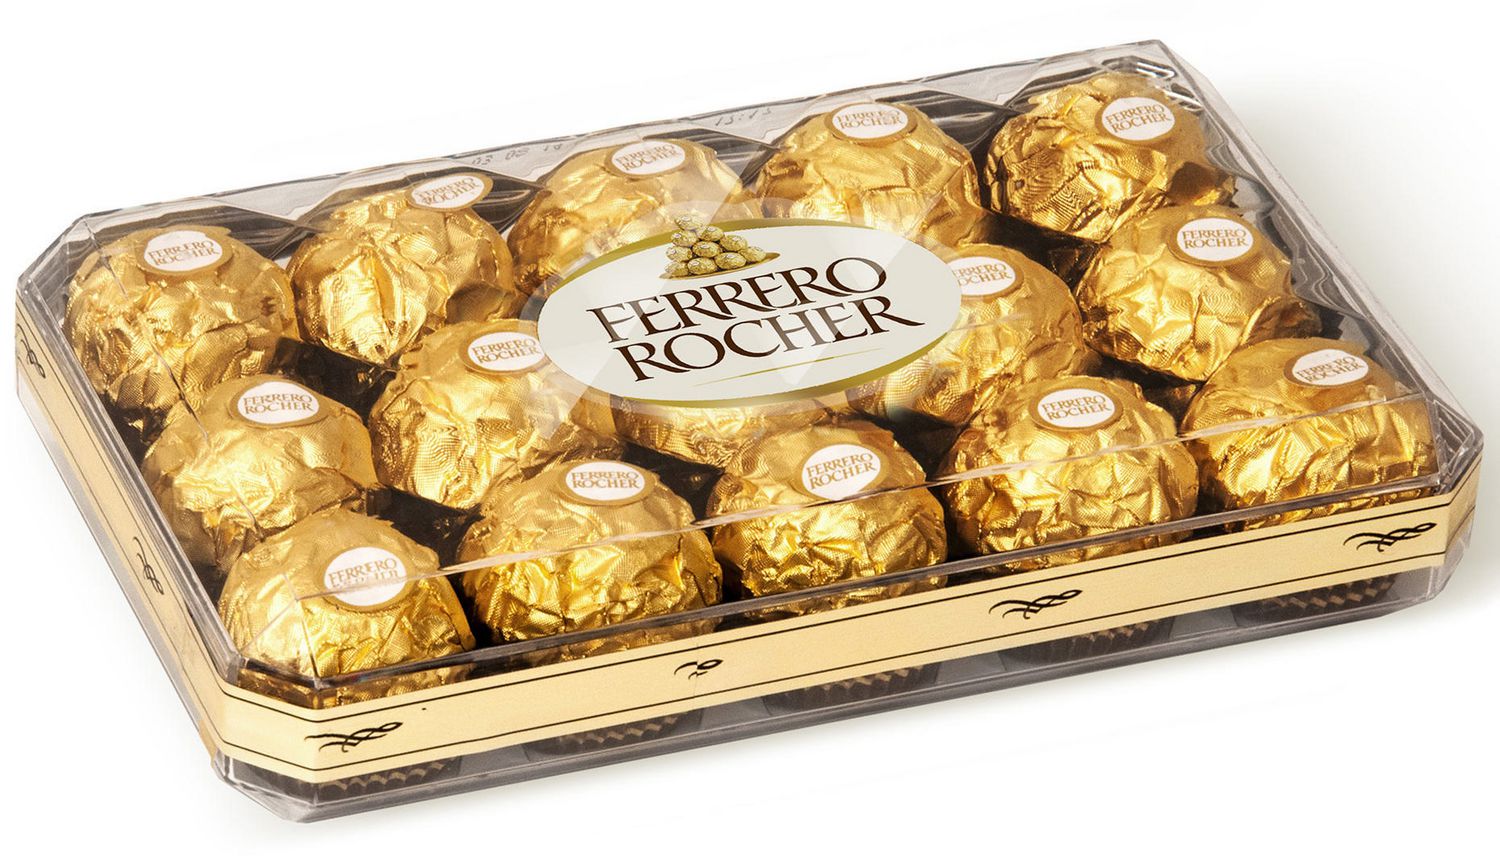 Ferrero Rocher Nutrition